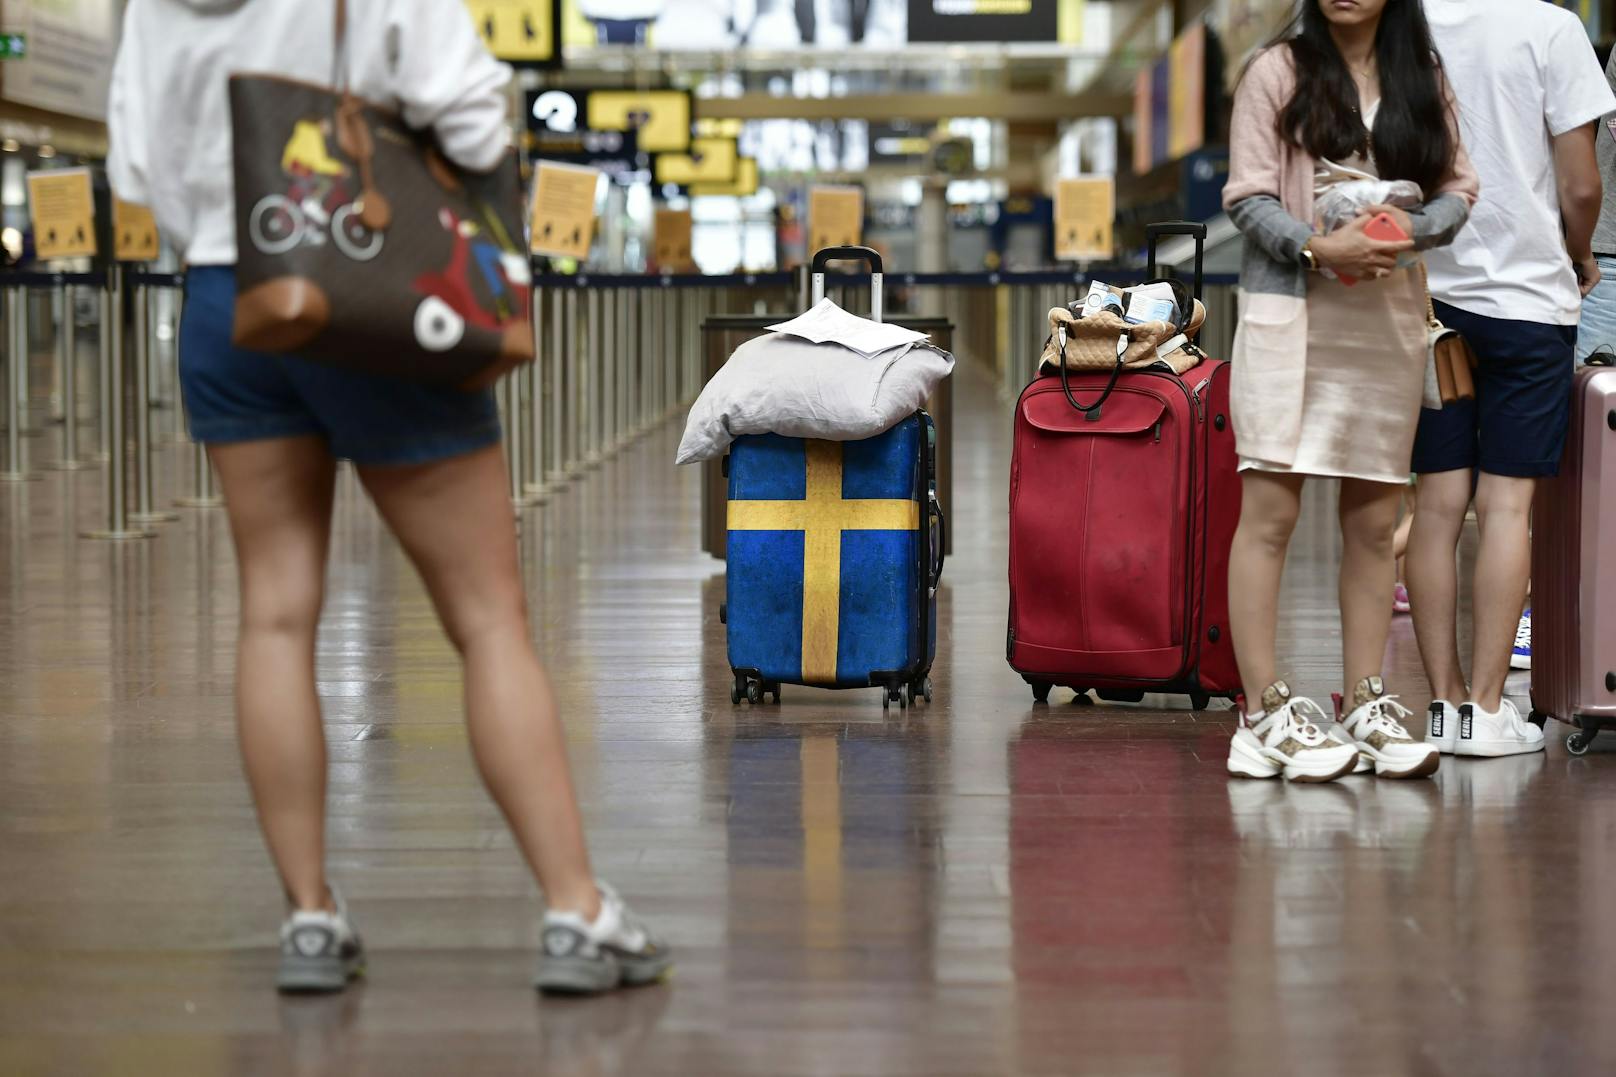 Eine verlassene Tasche legte den Stockholmer Airport für Stunden lahm. (Symbolbild)